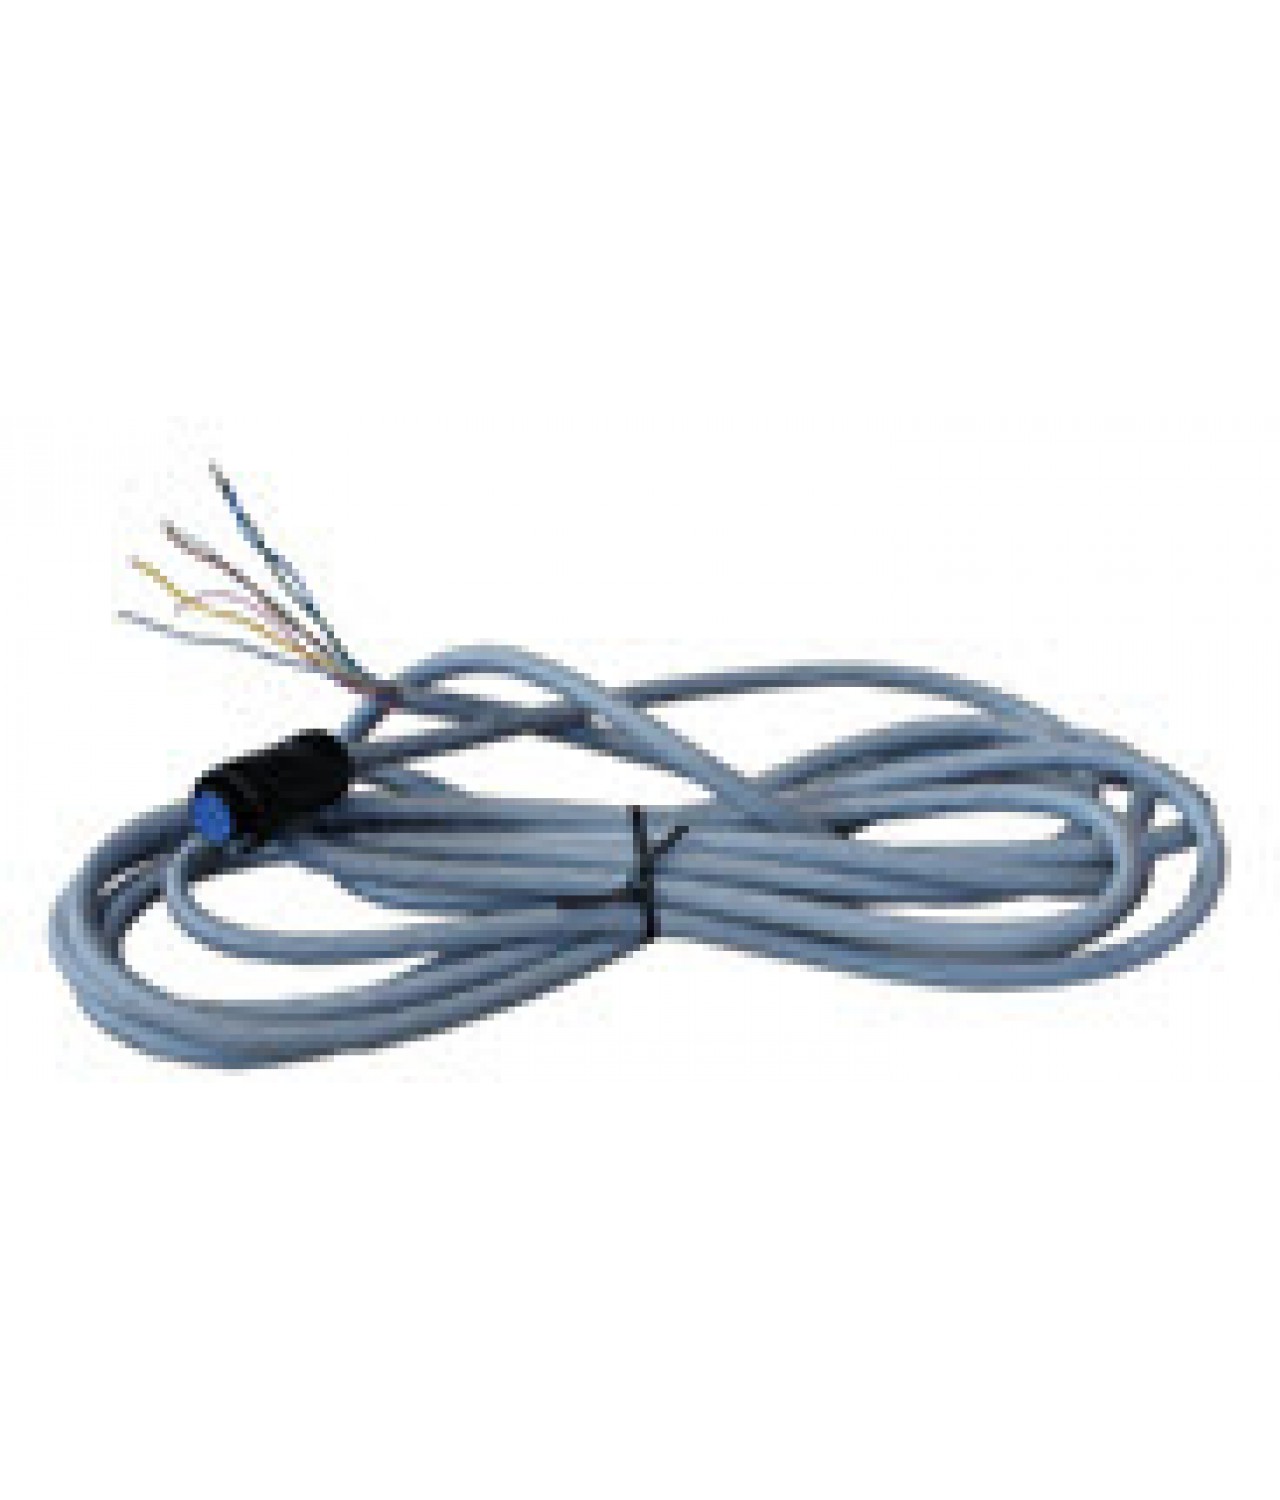 Сетевой кабель длиной 6 м для подключения вентиляторов SUPER POLAR к контроллерам - заказывается отдельно